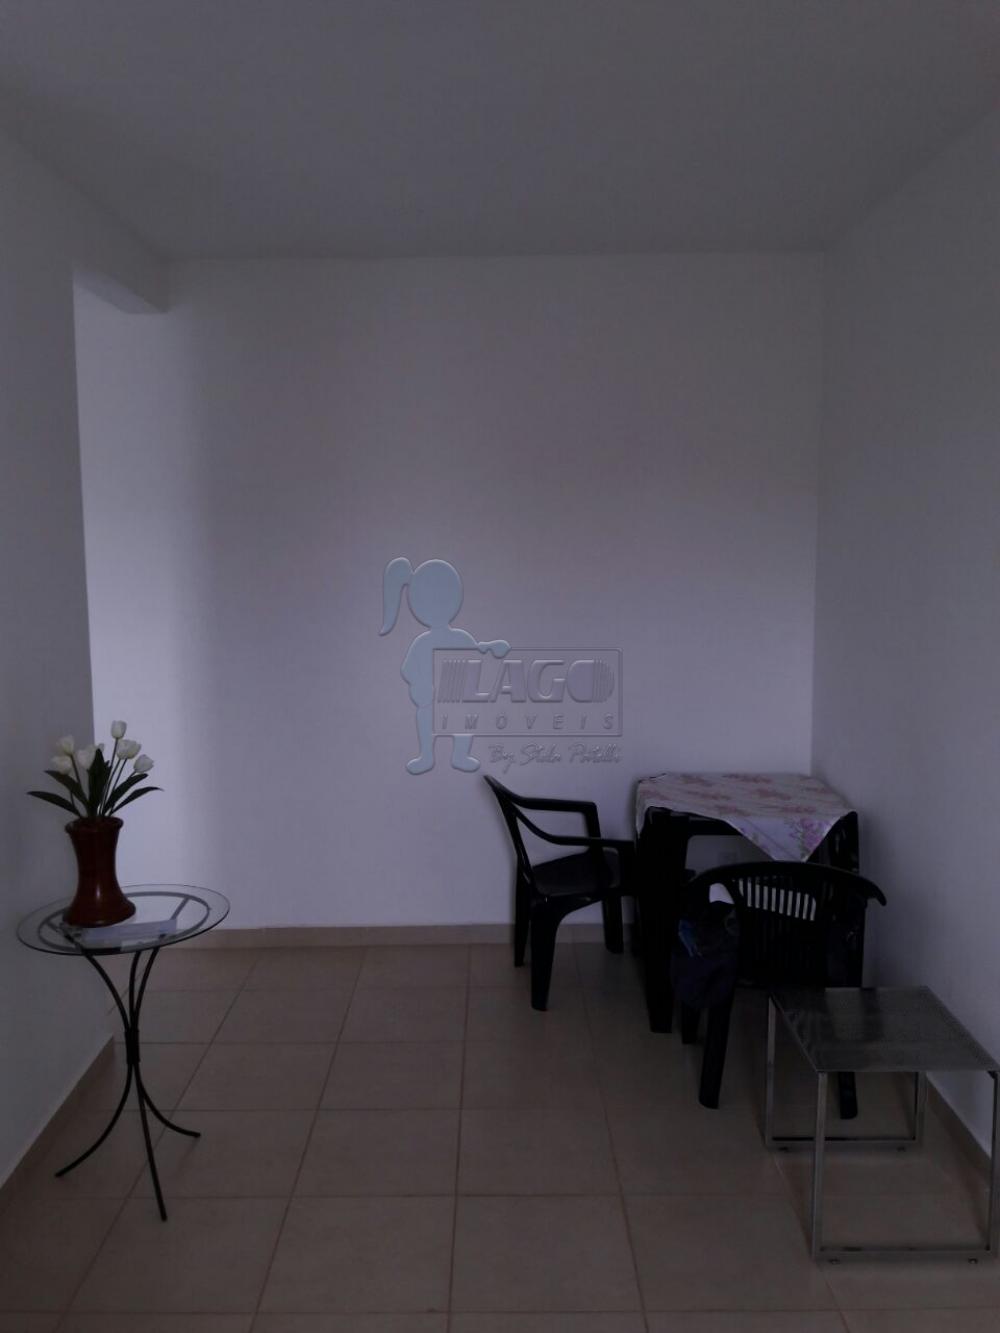 Comprar Apartamentos / Padrão em Ribeirão Preto R$ 144.000,00 - Foto 3